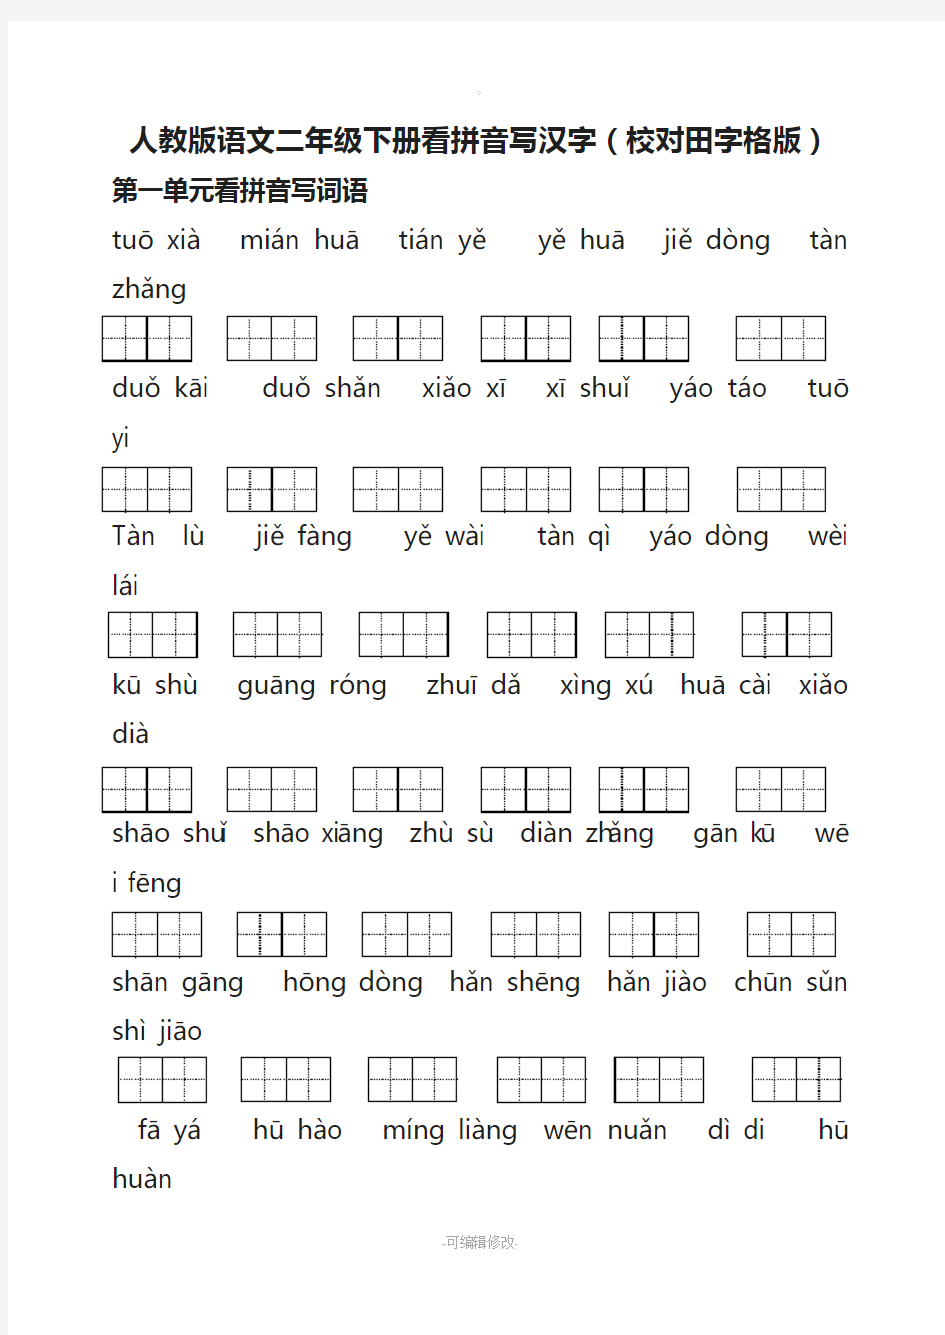 人教版语文二年级下册看拼音写汉字(校对田字格版)